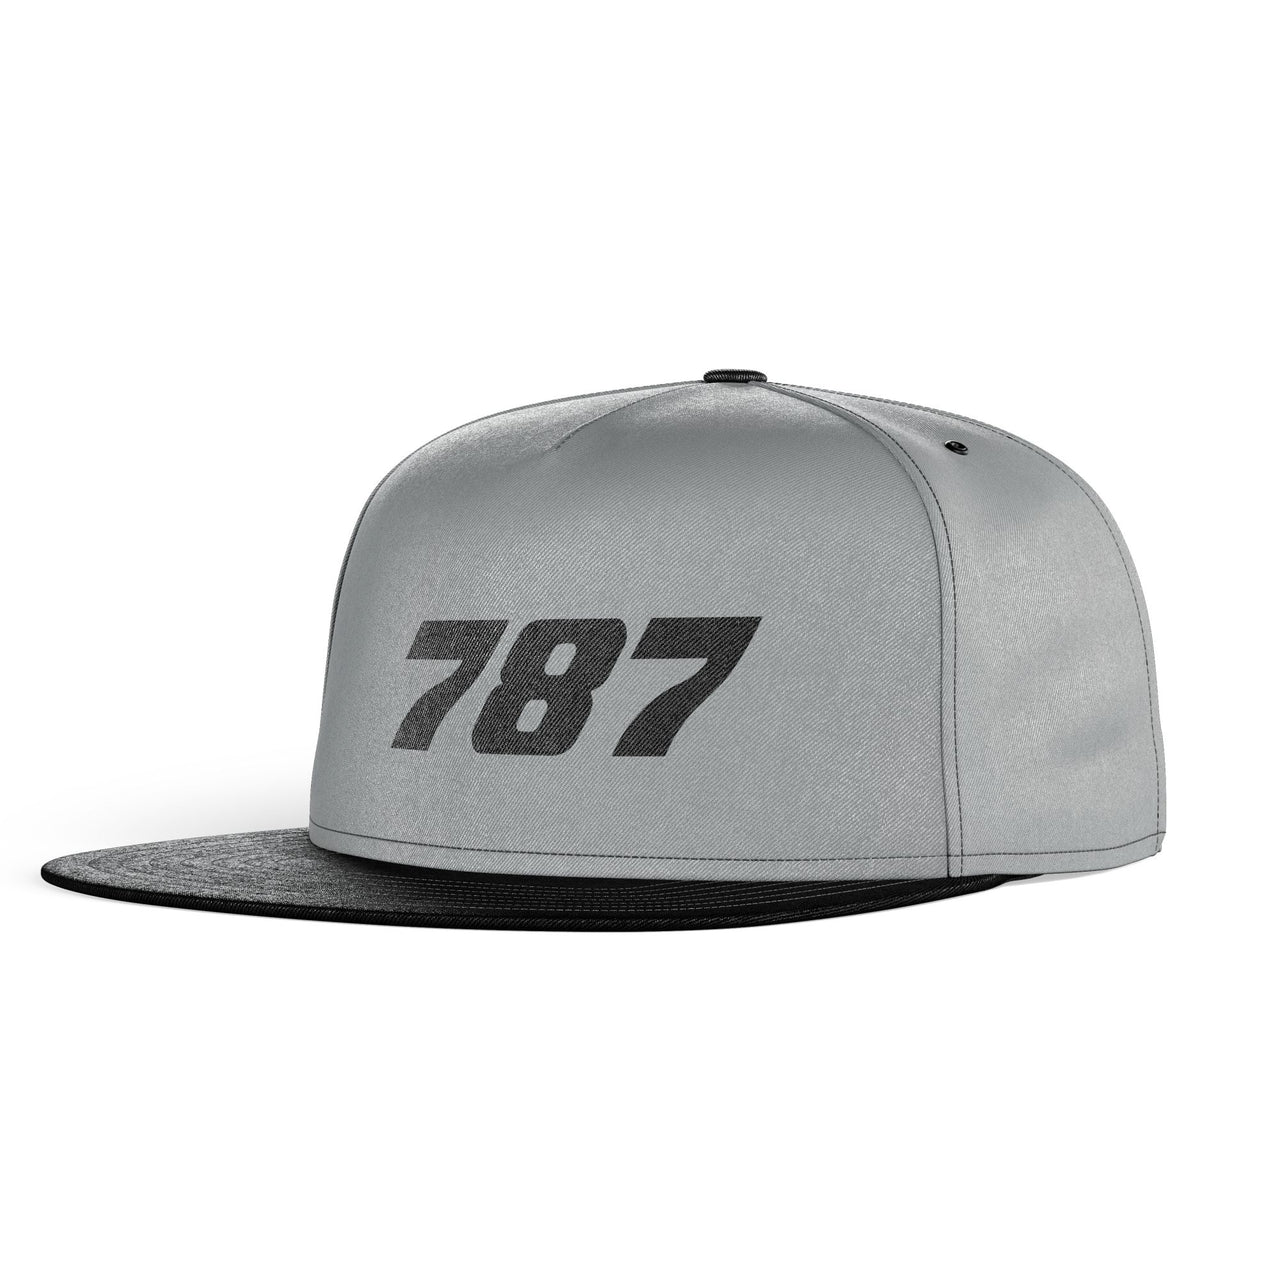 787 Flat Text Designed Snapback Caps & Hats